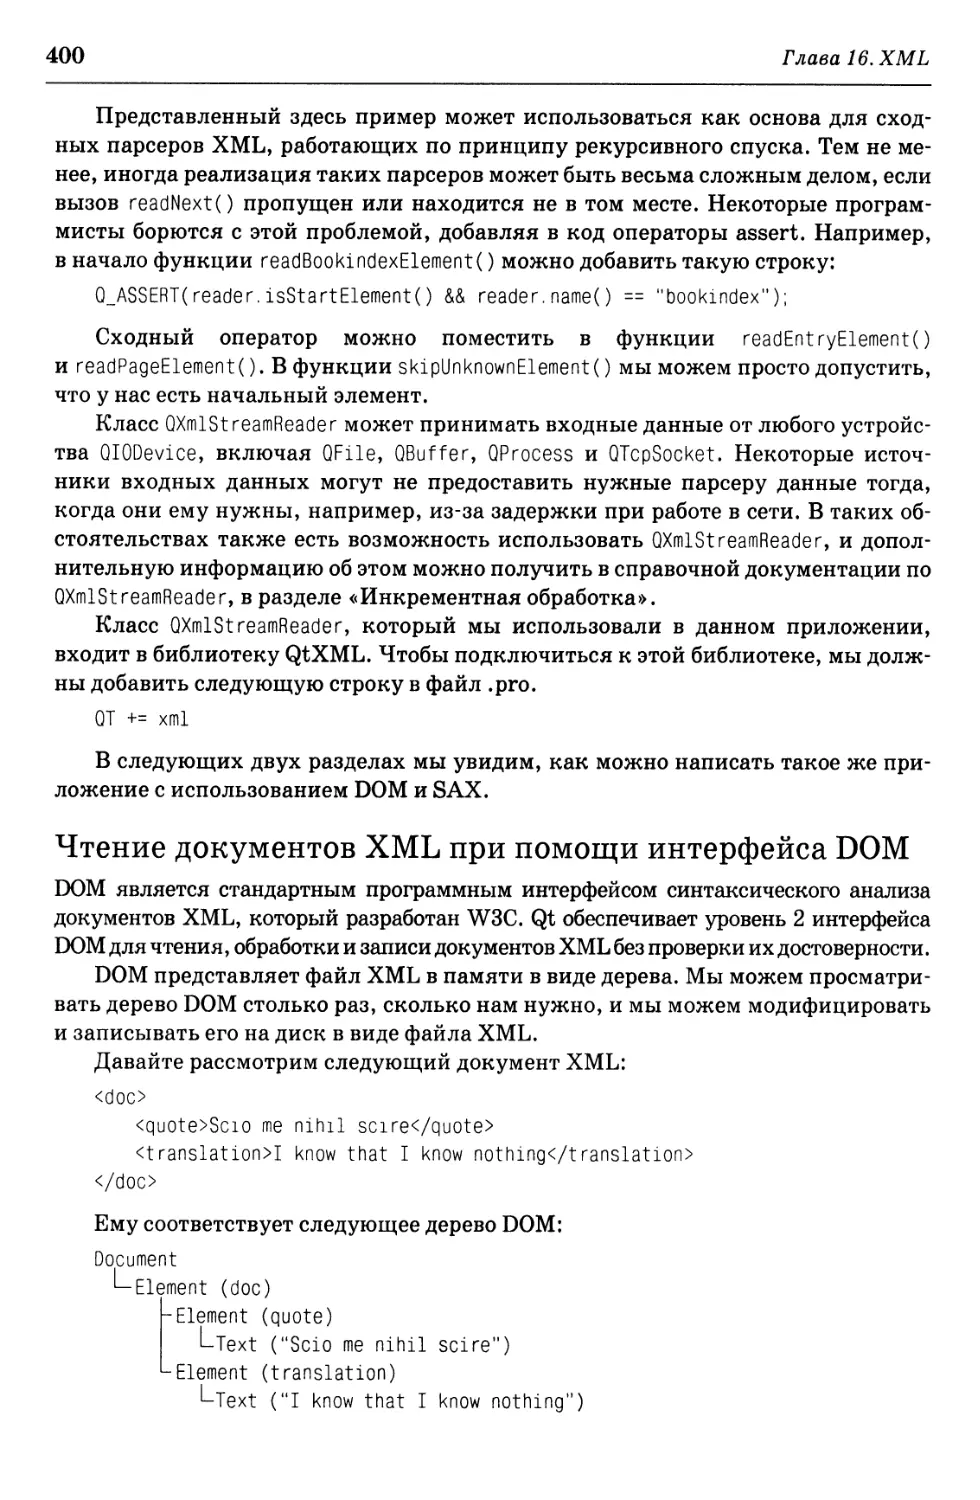 Чтение документов XML при помощи интерфейса DOM